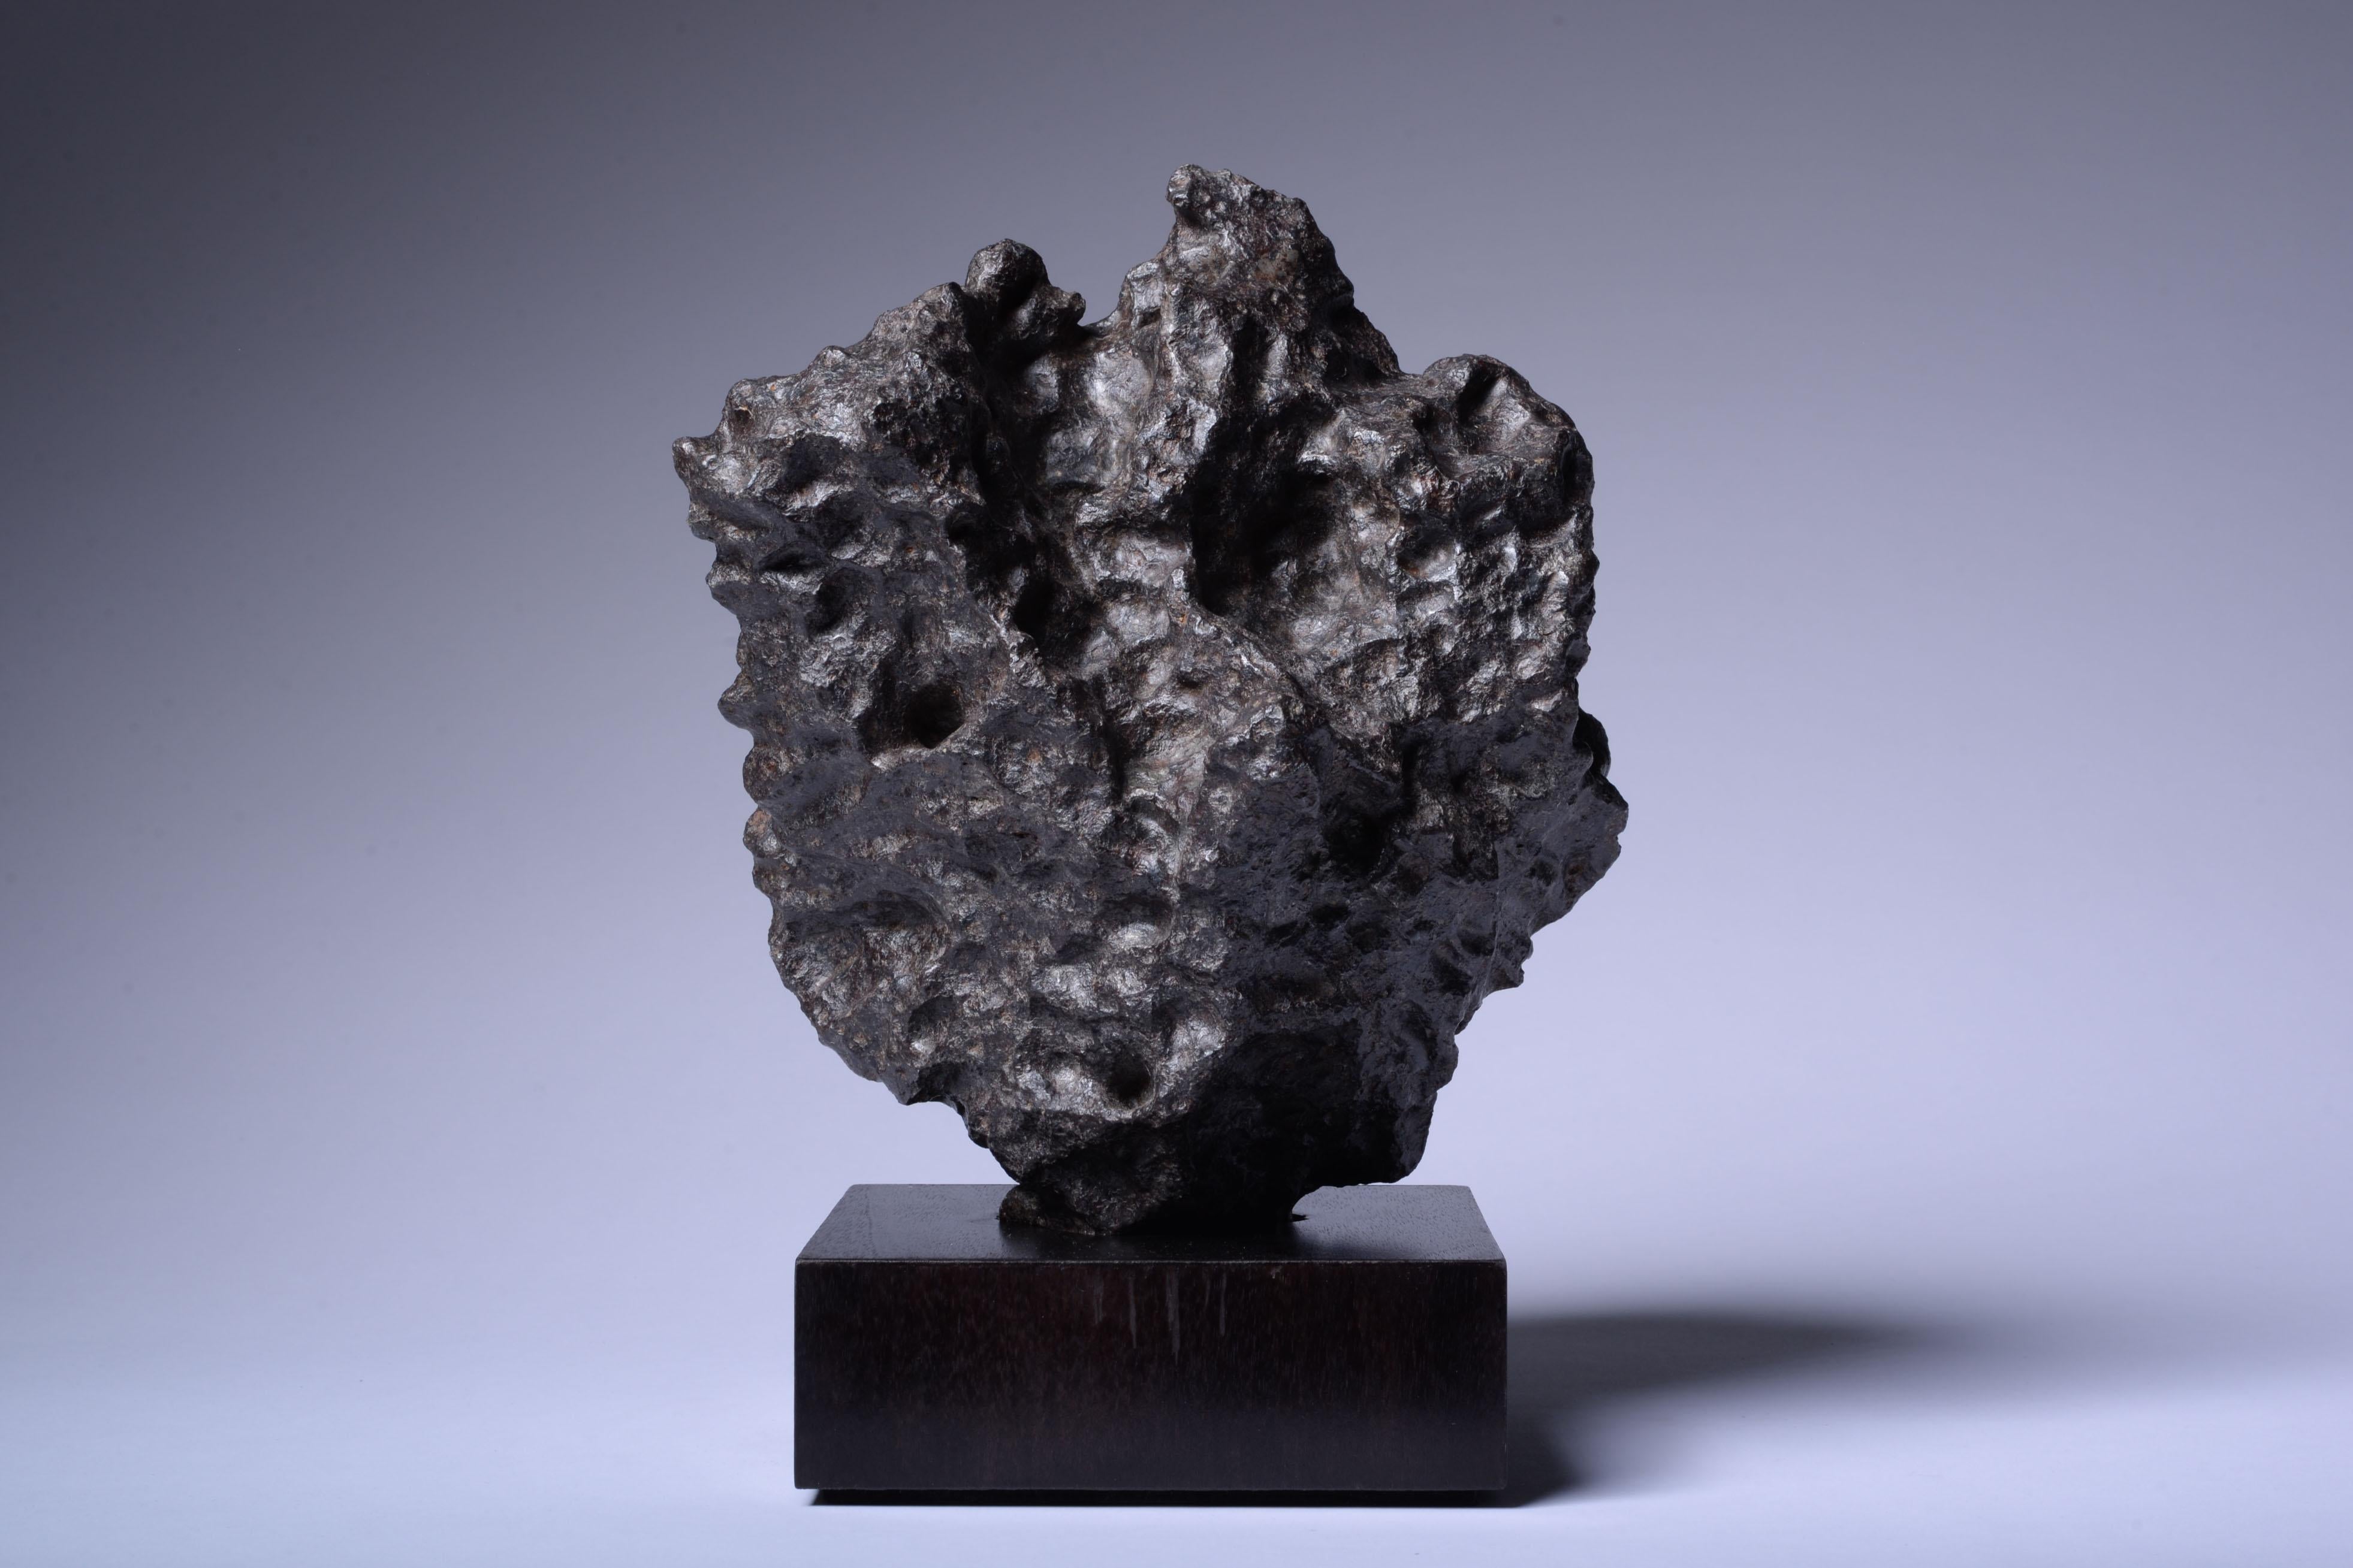 Météorite en fer de Morasko, Pologne
Environ 4.55 milliards d'années.
Fer, IAB-MG

Météorite sculpturale en fer datant de la formation du système solaire, il y a environ 4,55 milliards d'années, récupérée dans la réserve naturelle de la